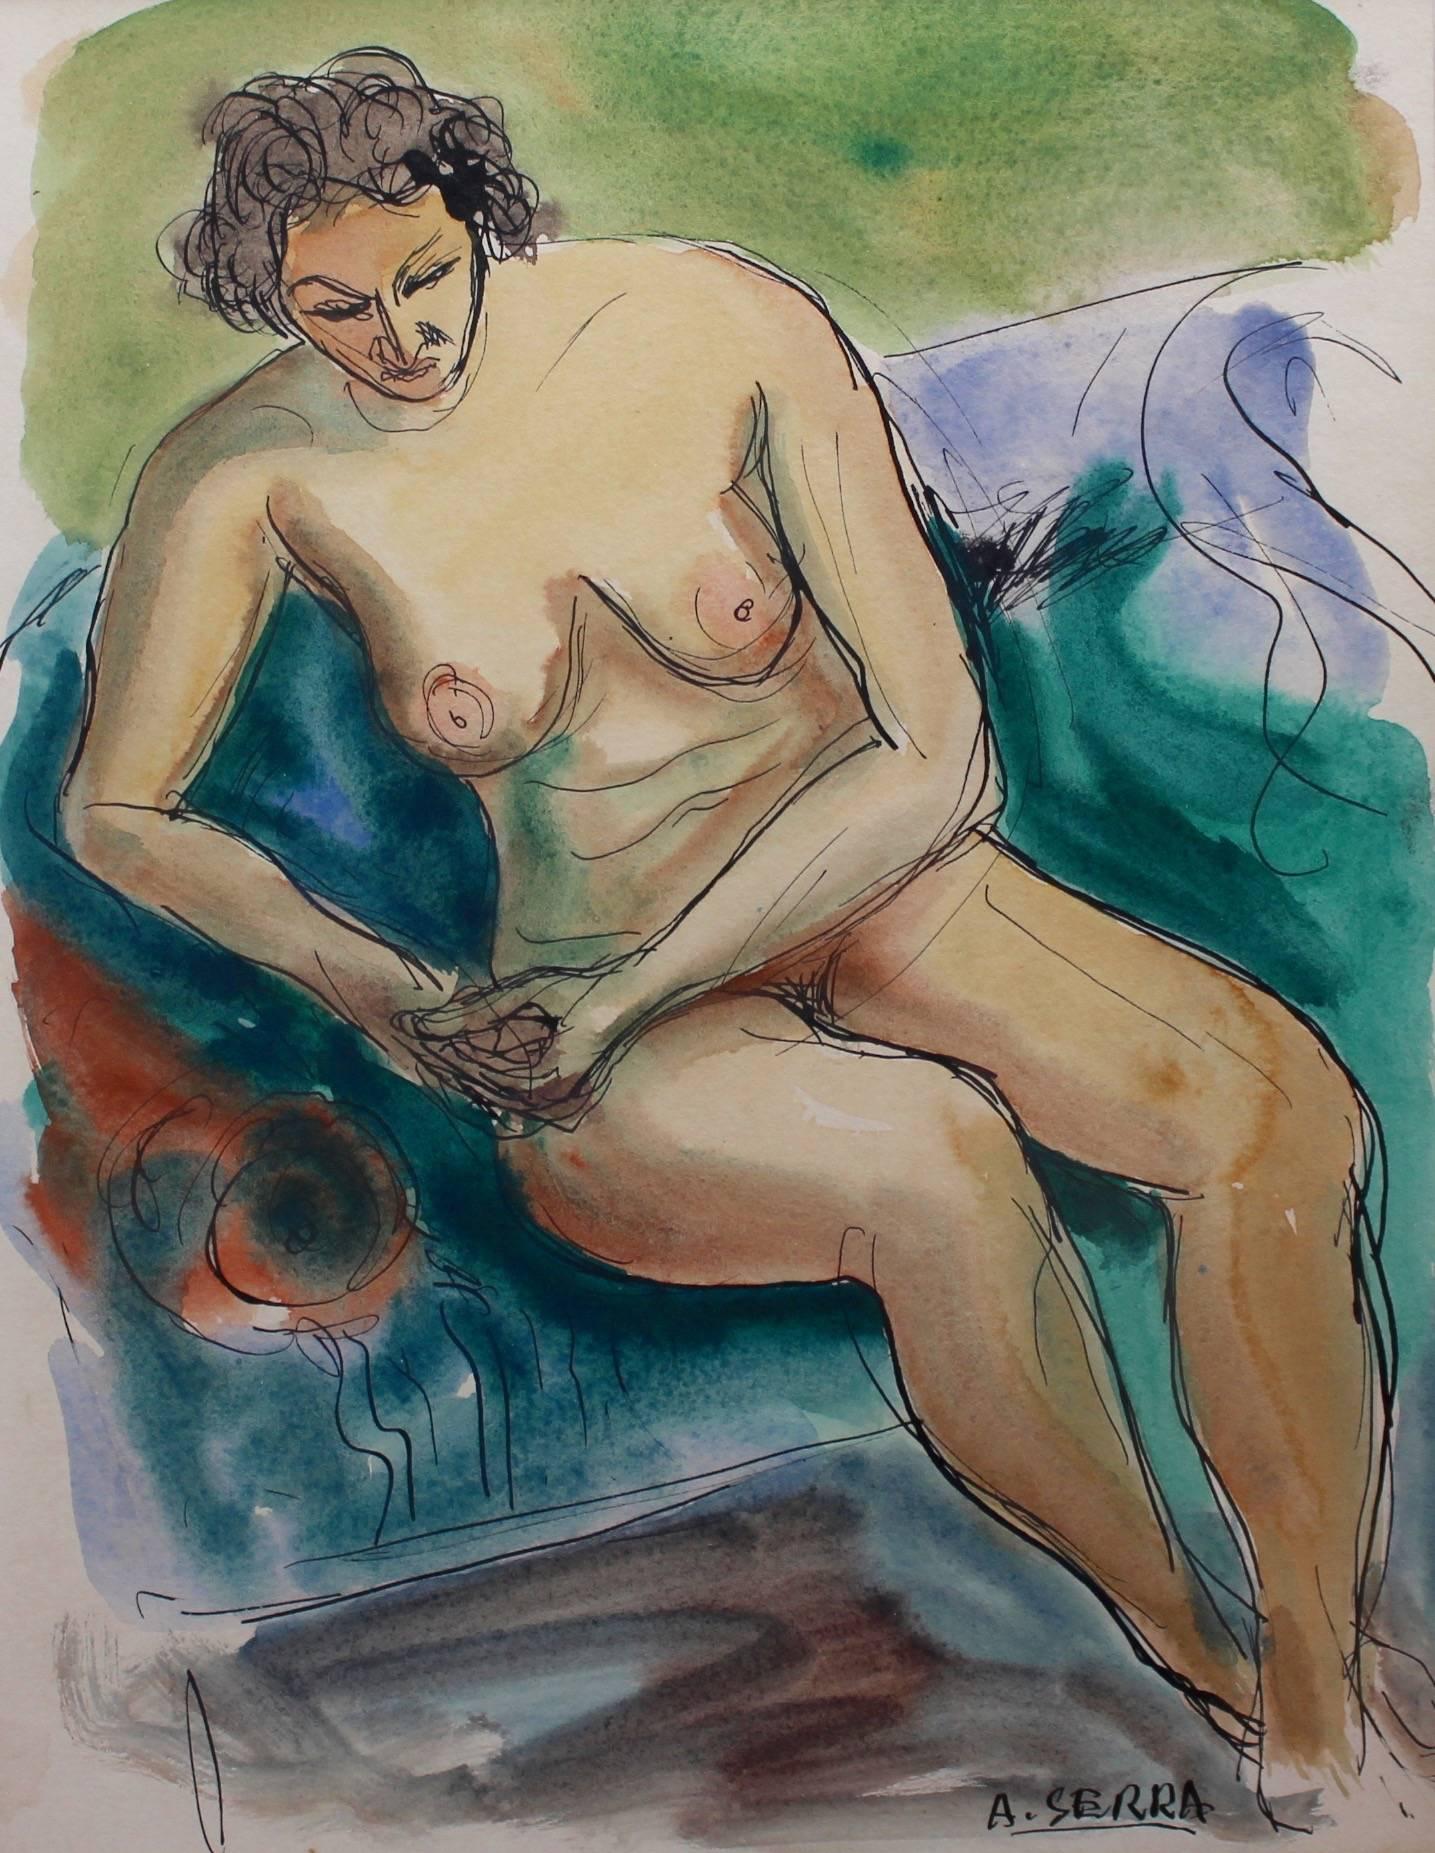 Seated Nude Woman - Art by Antoine Serra